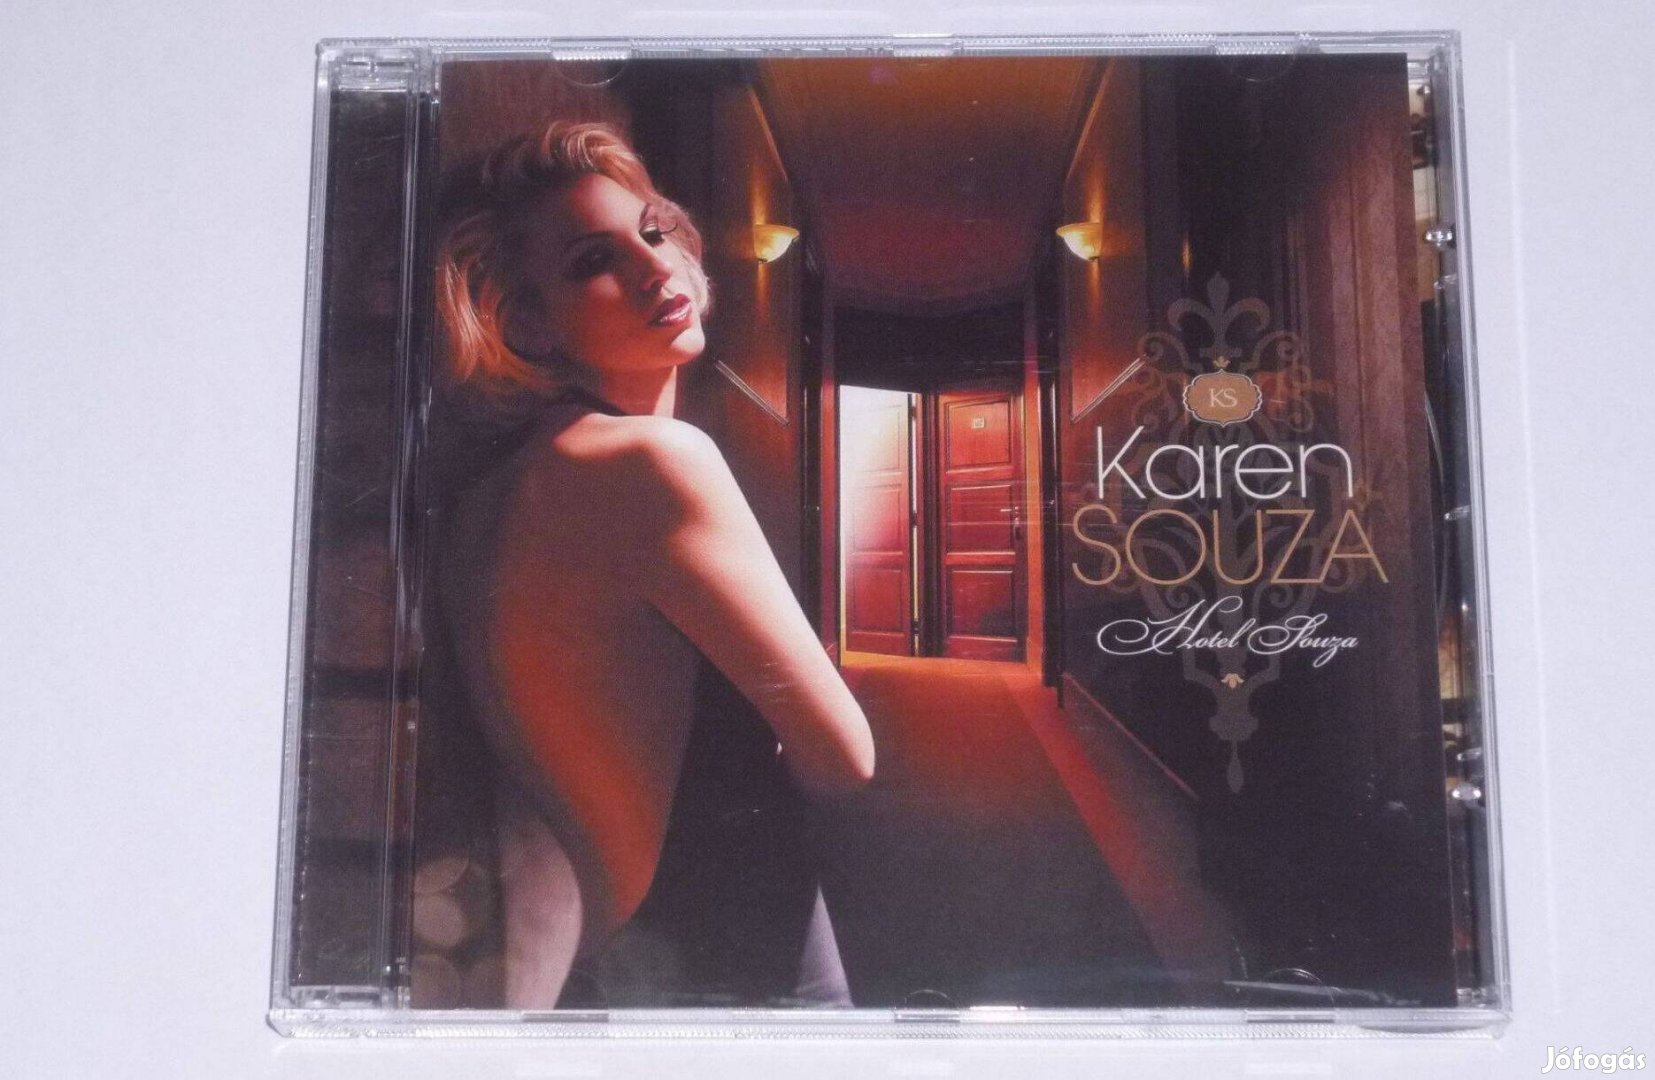 Karen Souza Hotel Souza CD Easy Listening, Smooth Jazz